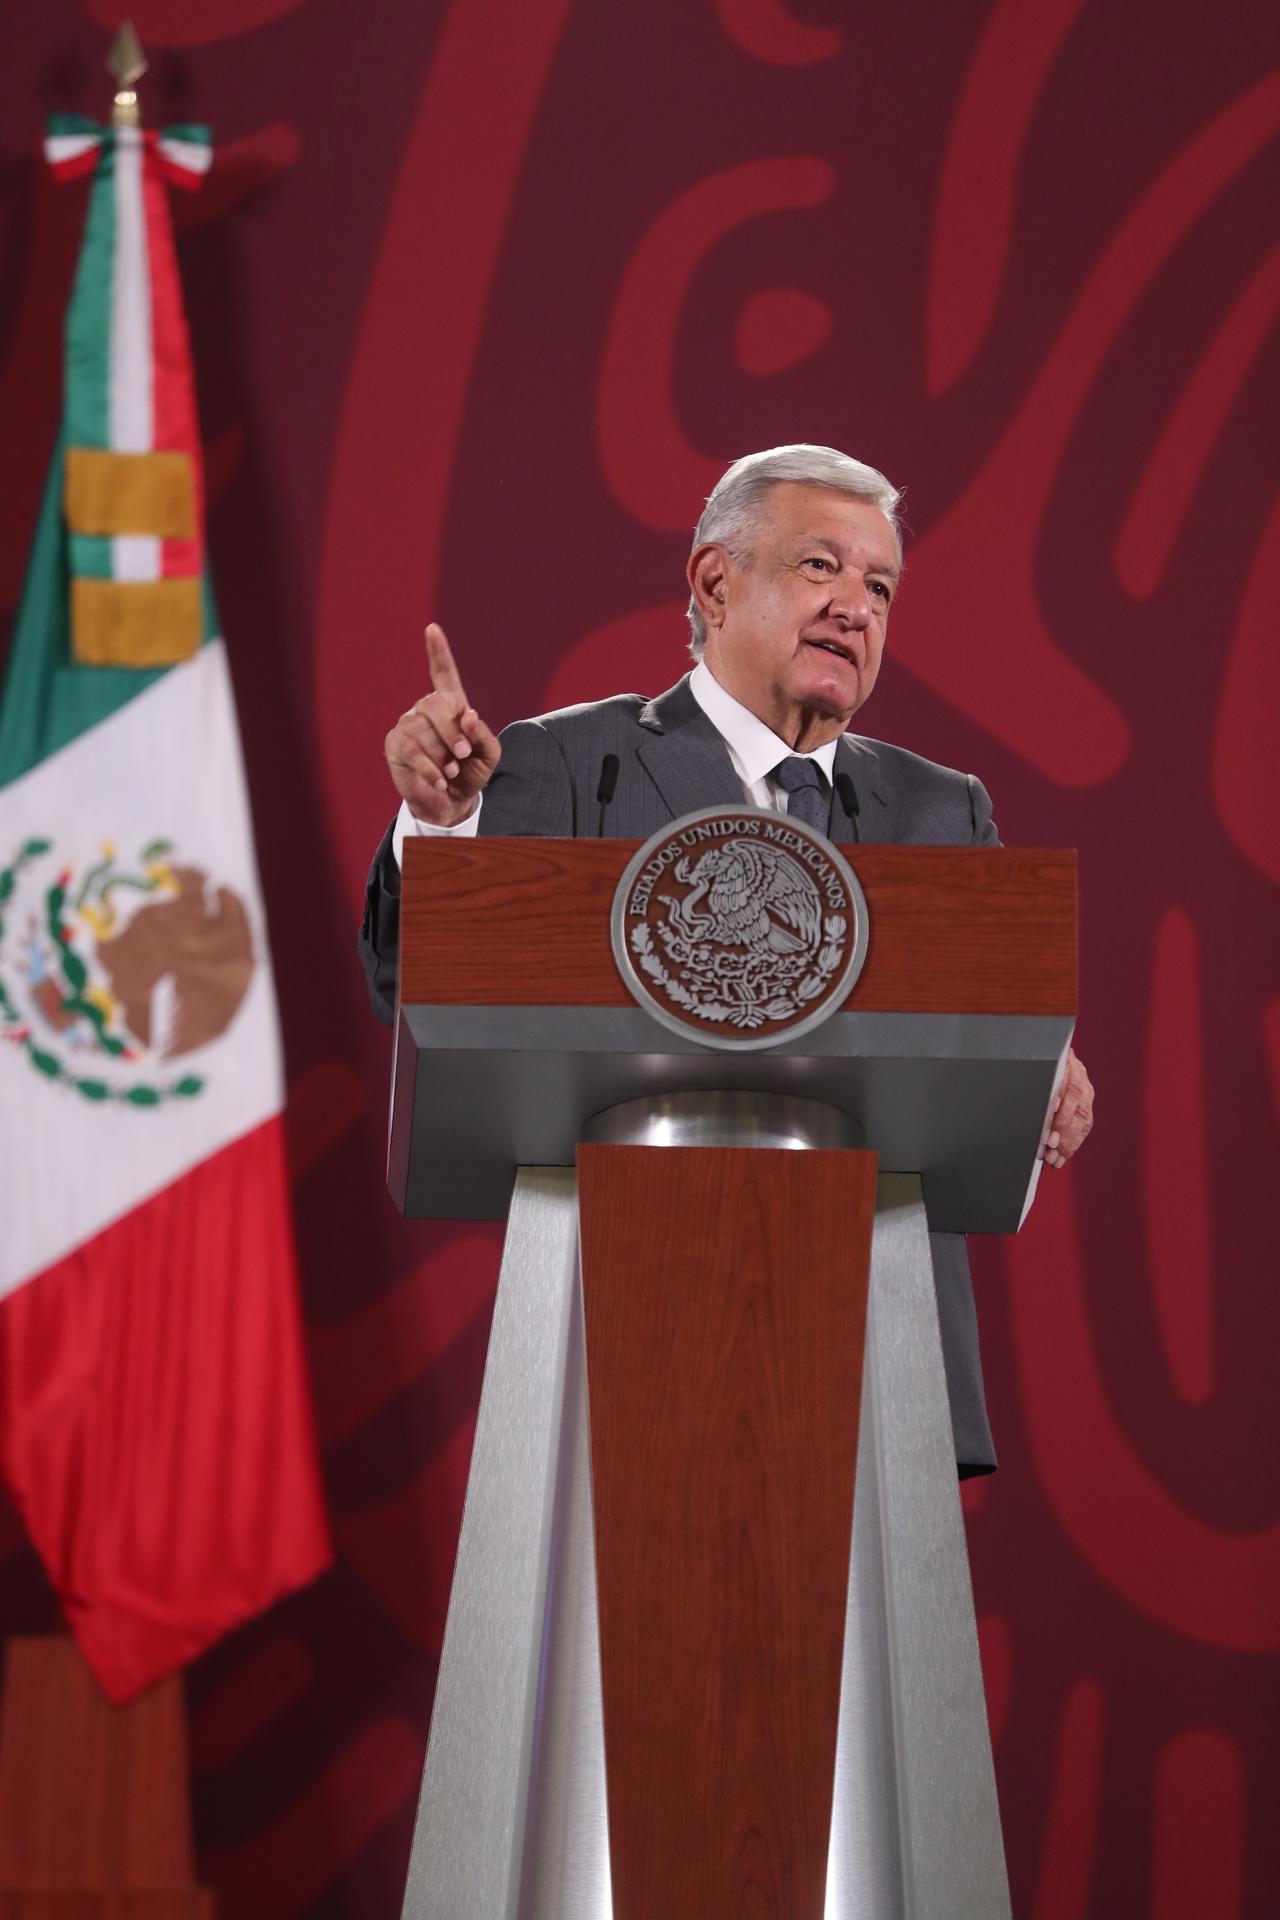 El presidente de México, Andrés Manuel López Obrador, durante su conferencia de prensa este martes, en Palacio Nacional en la Ciudad de México (México). EFE/Sáshenka Gutiérrez
